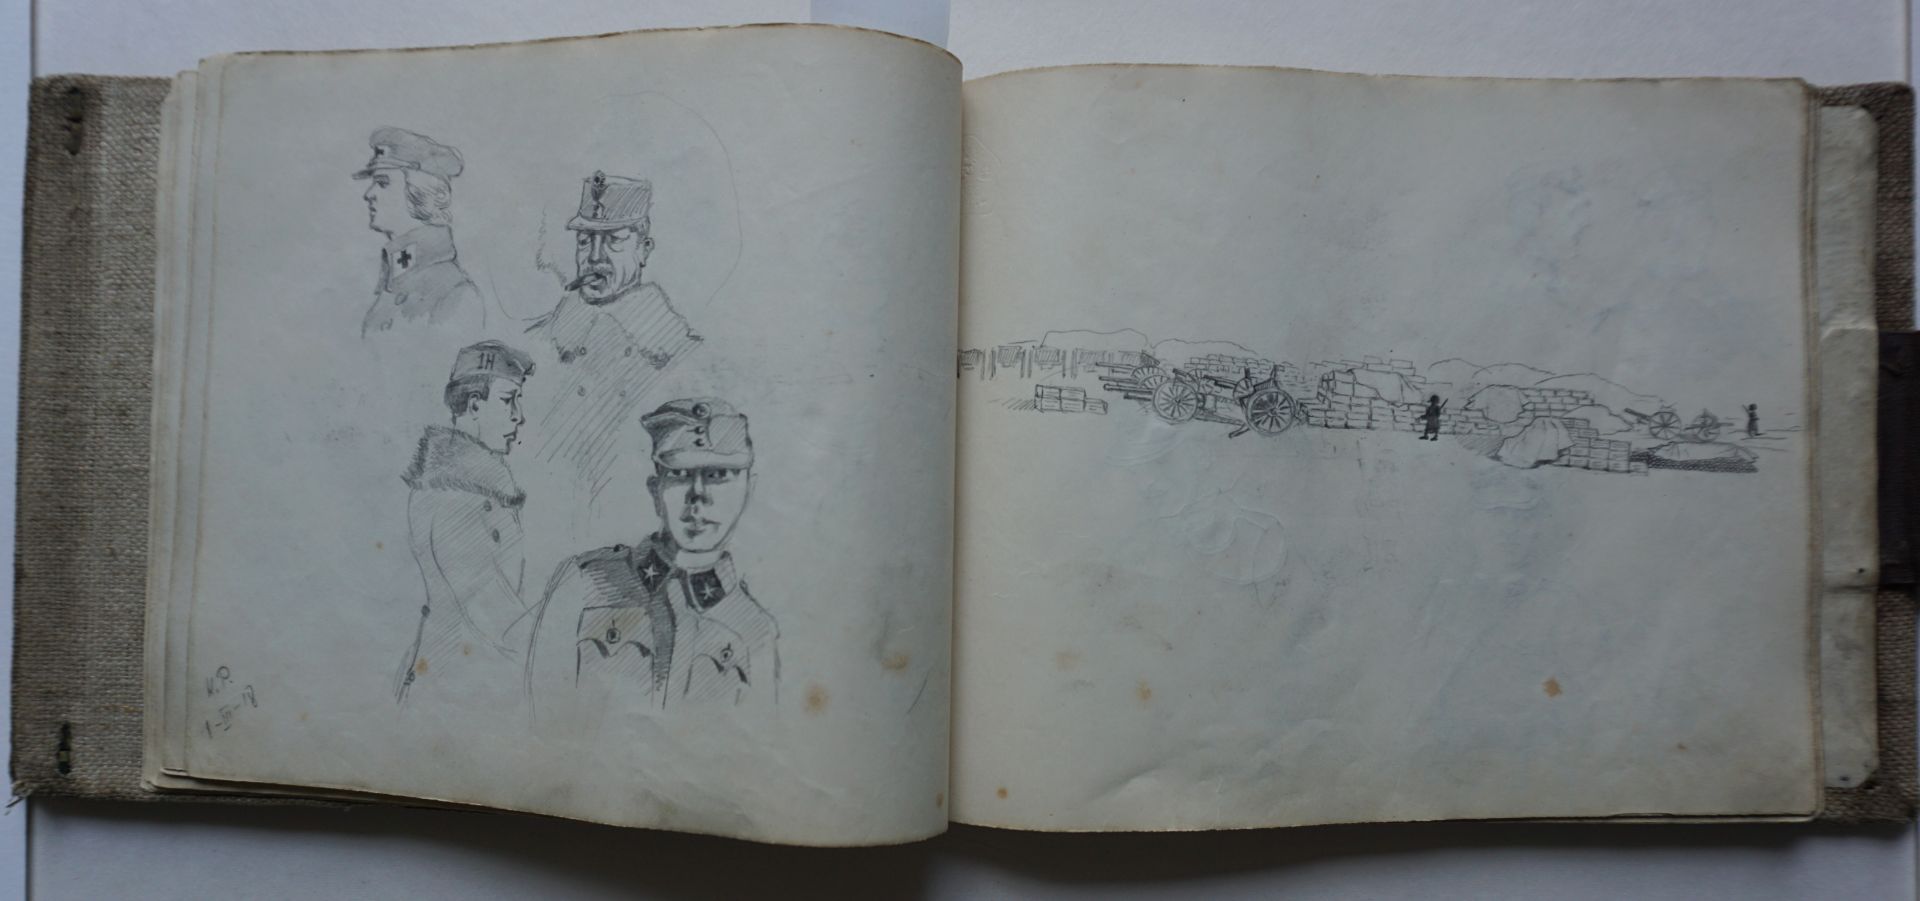 Skizzenbuch eines polnischen Soldaten im 1.Weltkrieg - Image 23 of 34